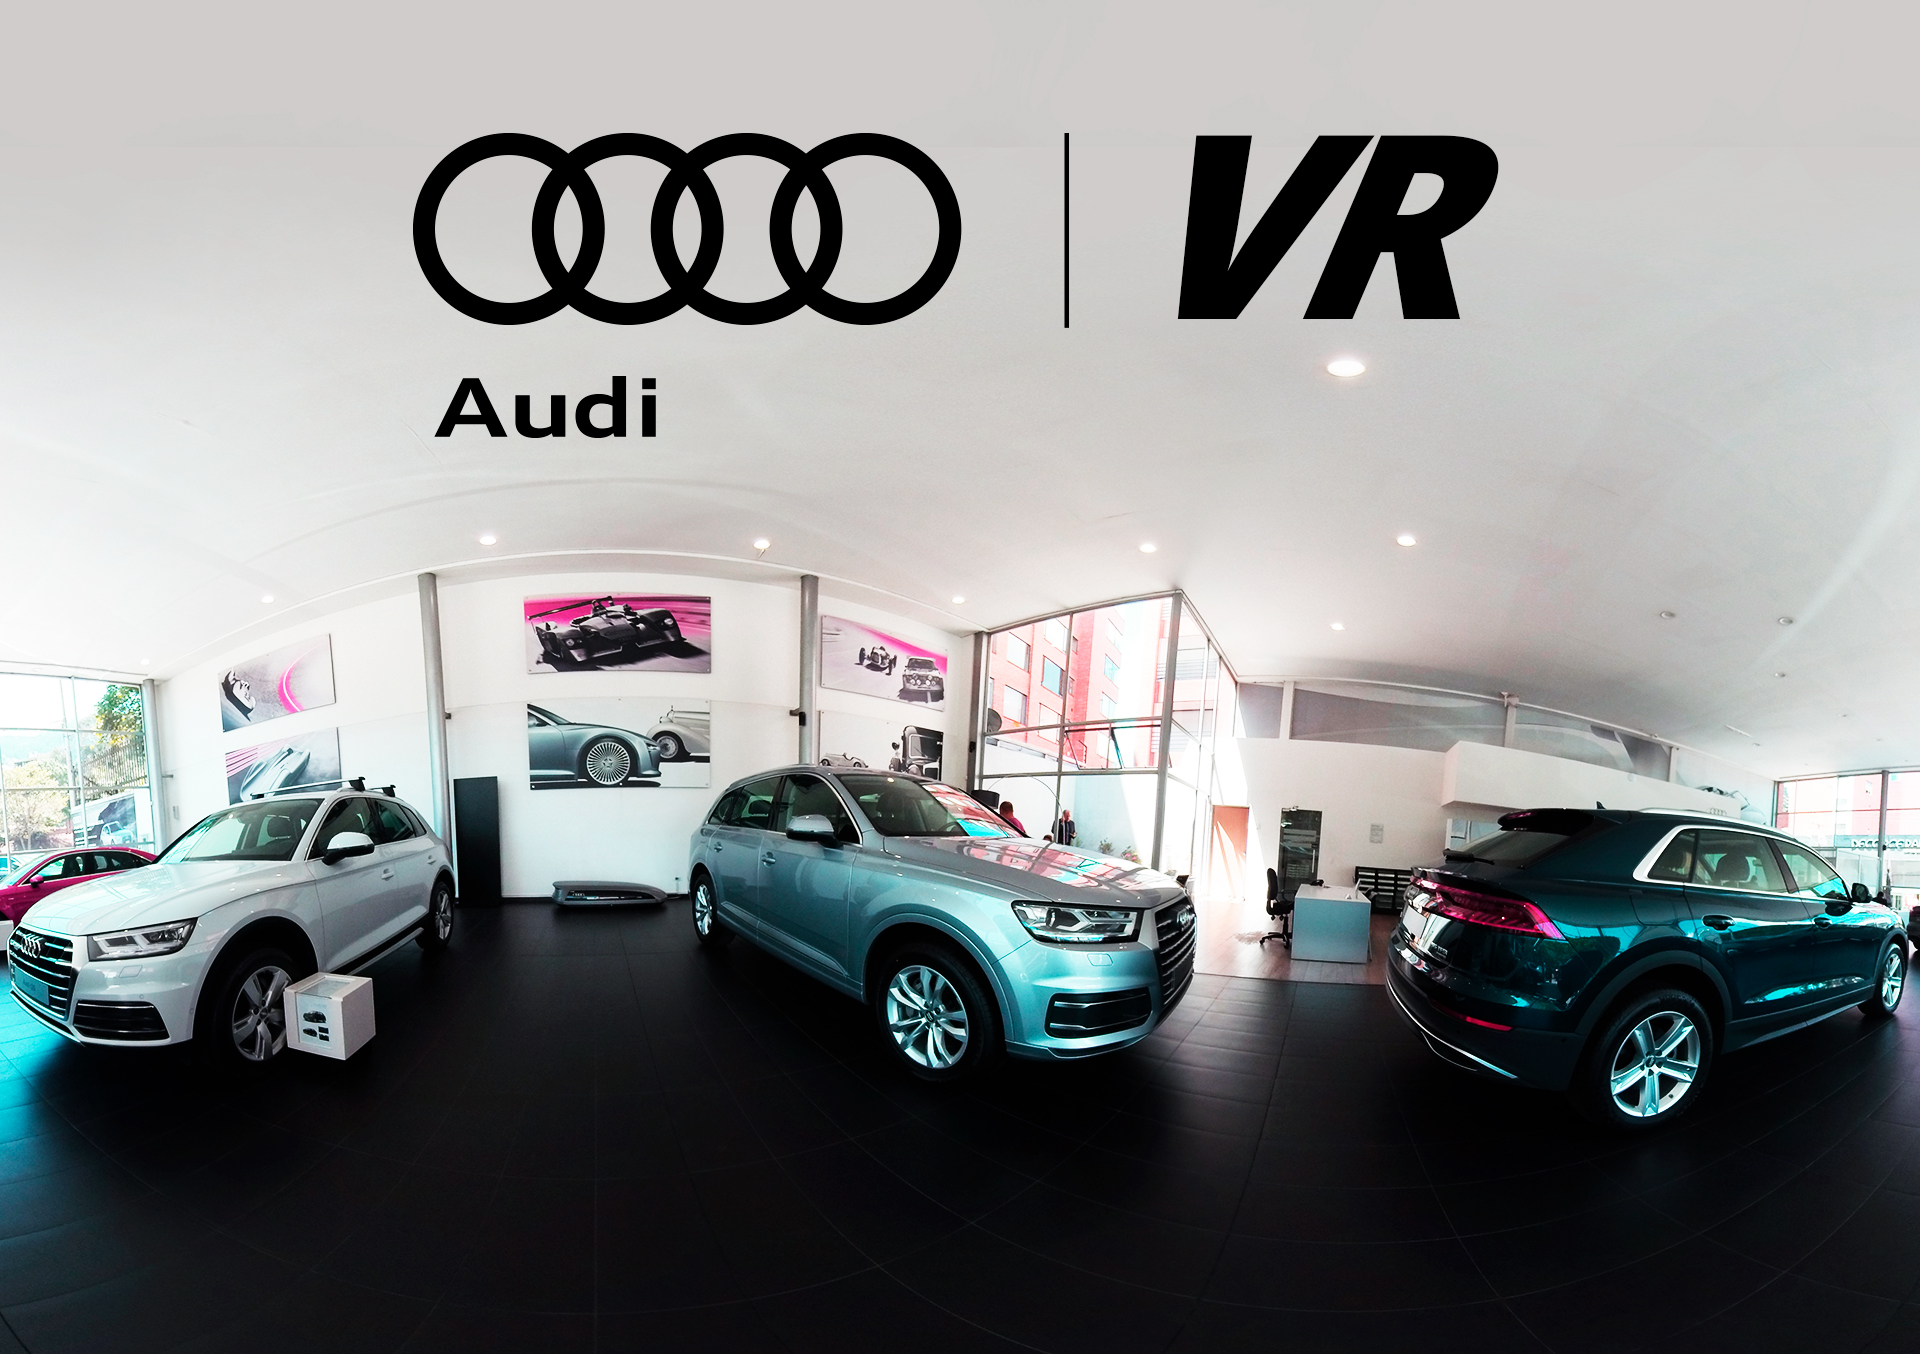 Audi realidad virtual transformación digital 4.0 OWOLS.com